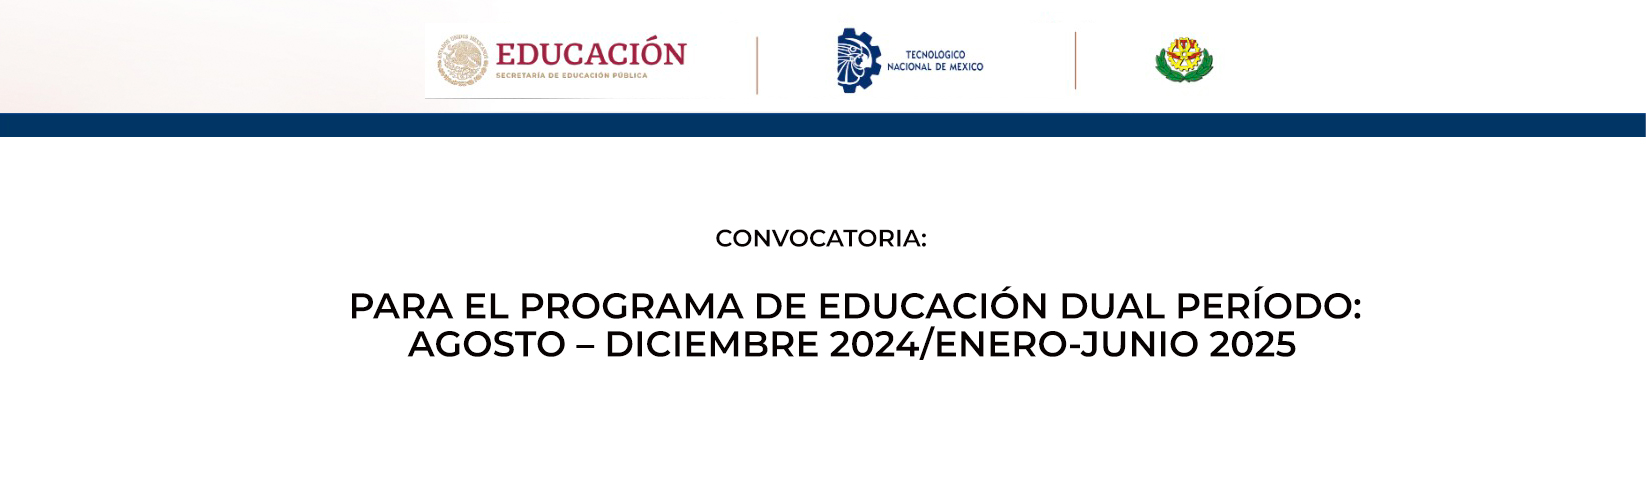 CONVOCATORIA PARA EL PROGRAMA DE EDUCACIÓN DUAL PERÍODO:  AGOSTO – DICIEMBRE 2024/ENERO-JUNIO 2025